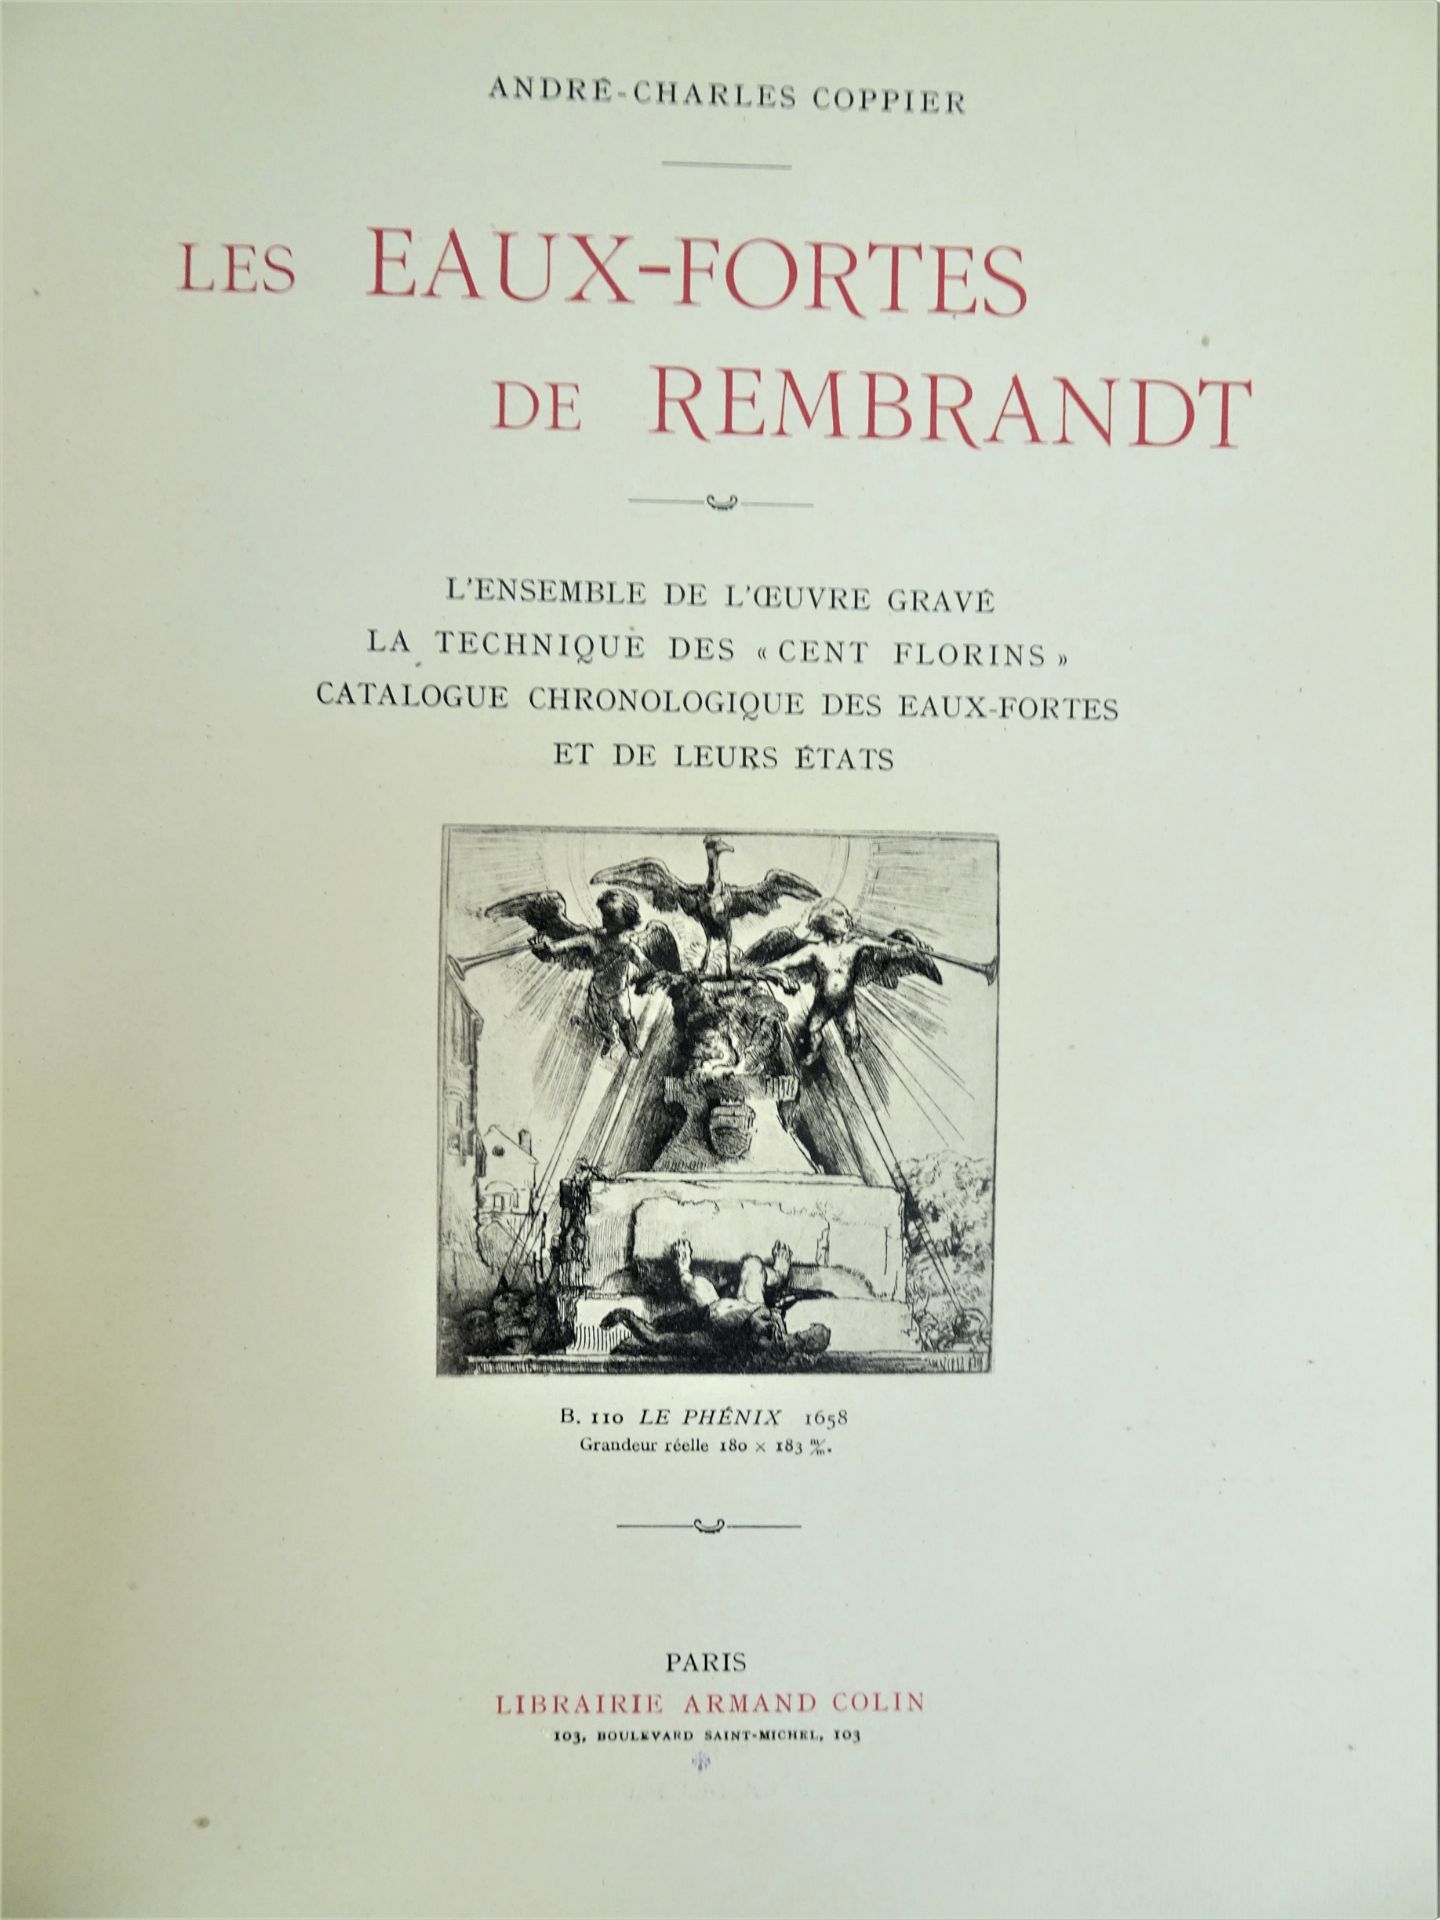 |Art|André Charles Coppier, "Les eaux-fortes de Rembrandt", 1922, limité. Paris, Armand Colin, " - Image 2 of 15